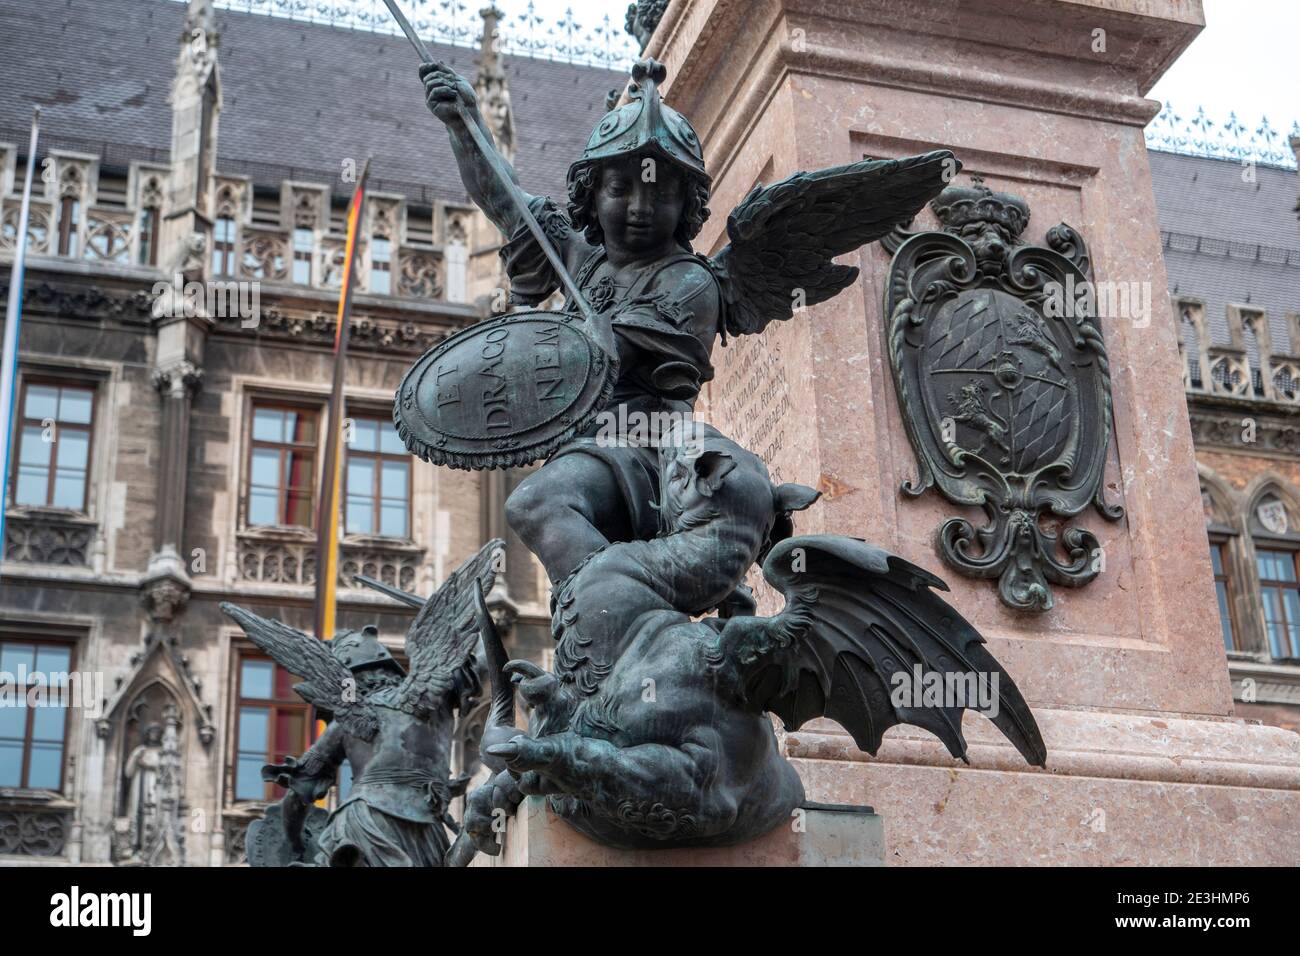 L'une des écuelles de la colonne de Maria de Munich. Cet ange combat un dragon qui représente la faim. Banque D'Images